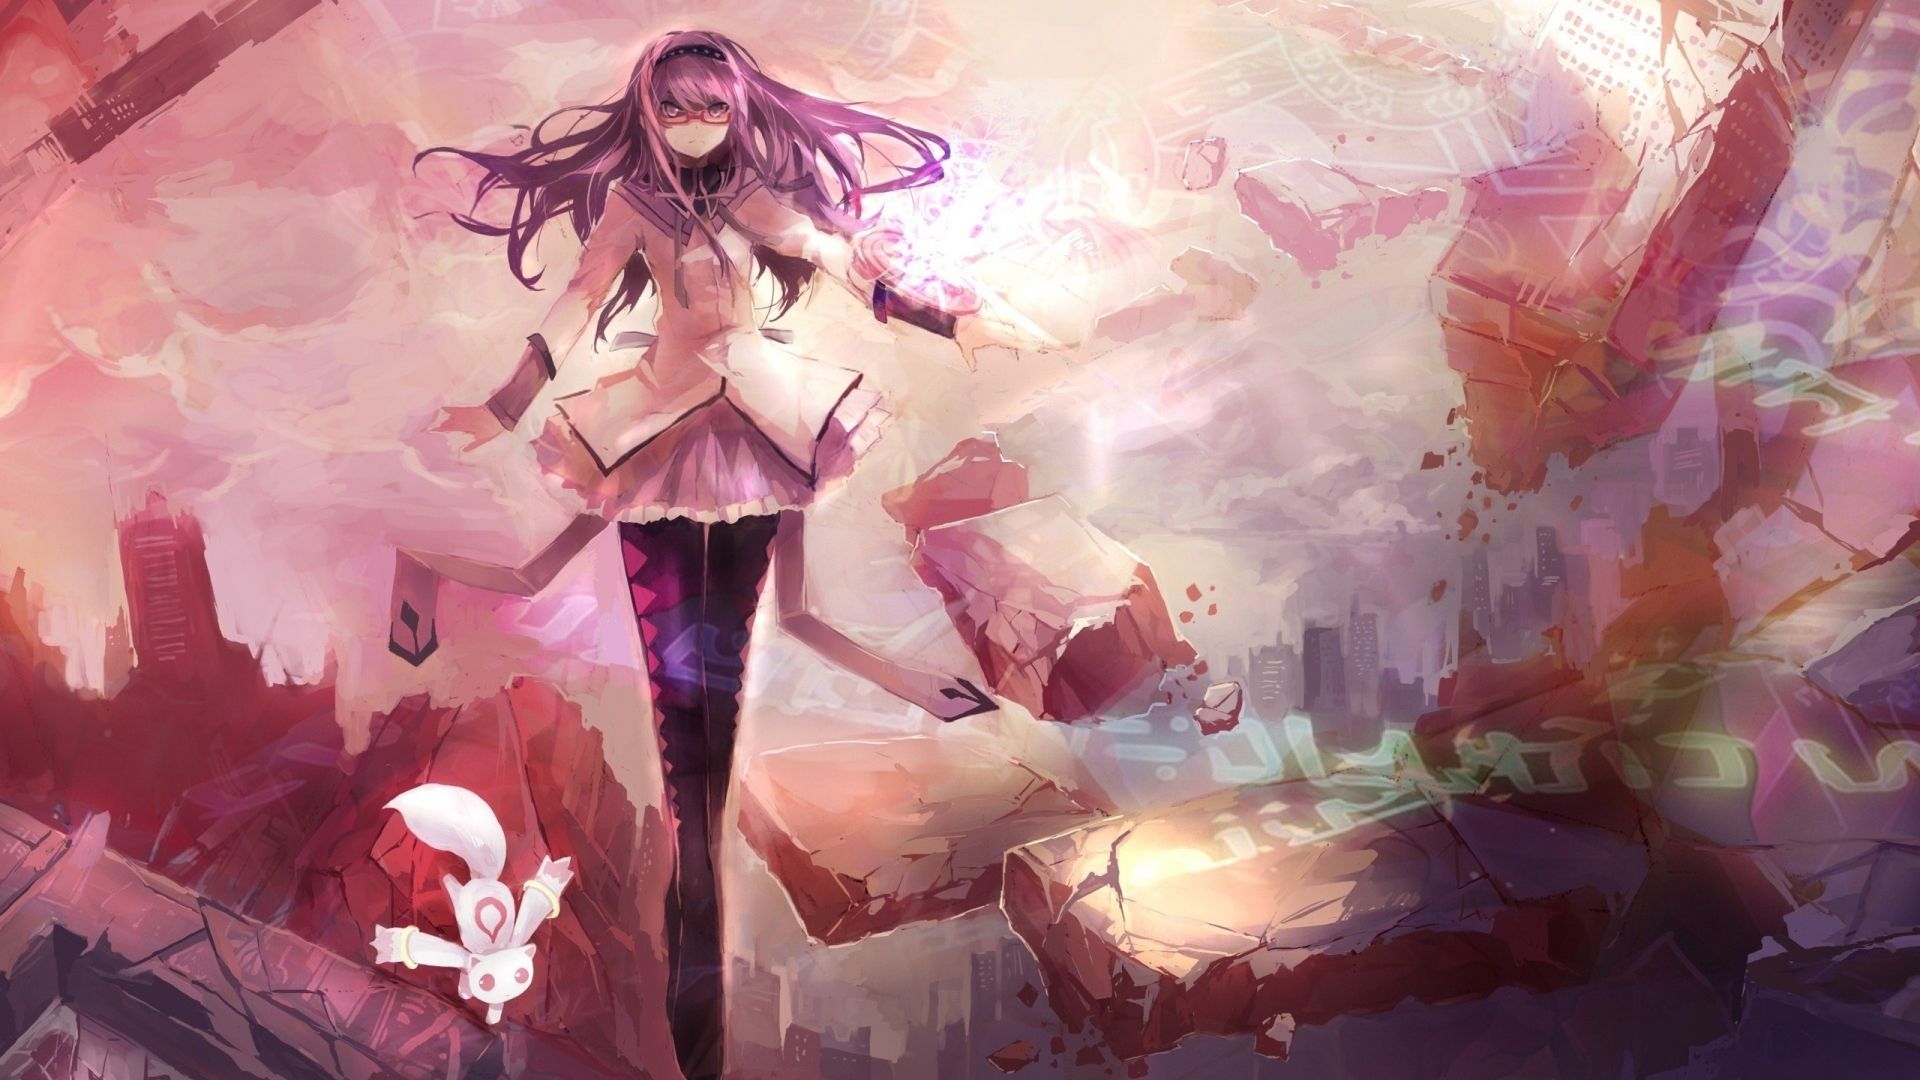 Anime Love Art Wallpaper, HD Anime Love Art Background on WallpaperBat